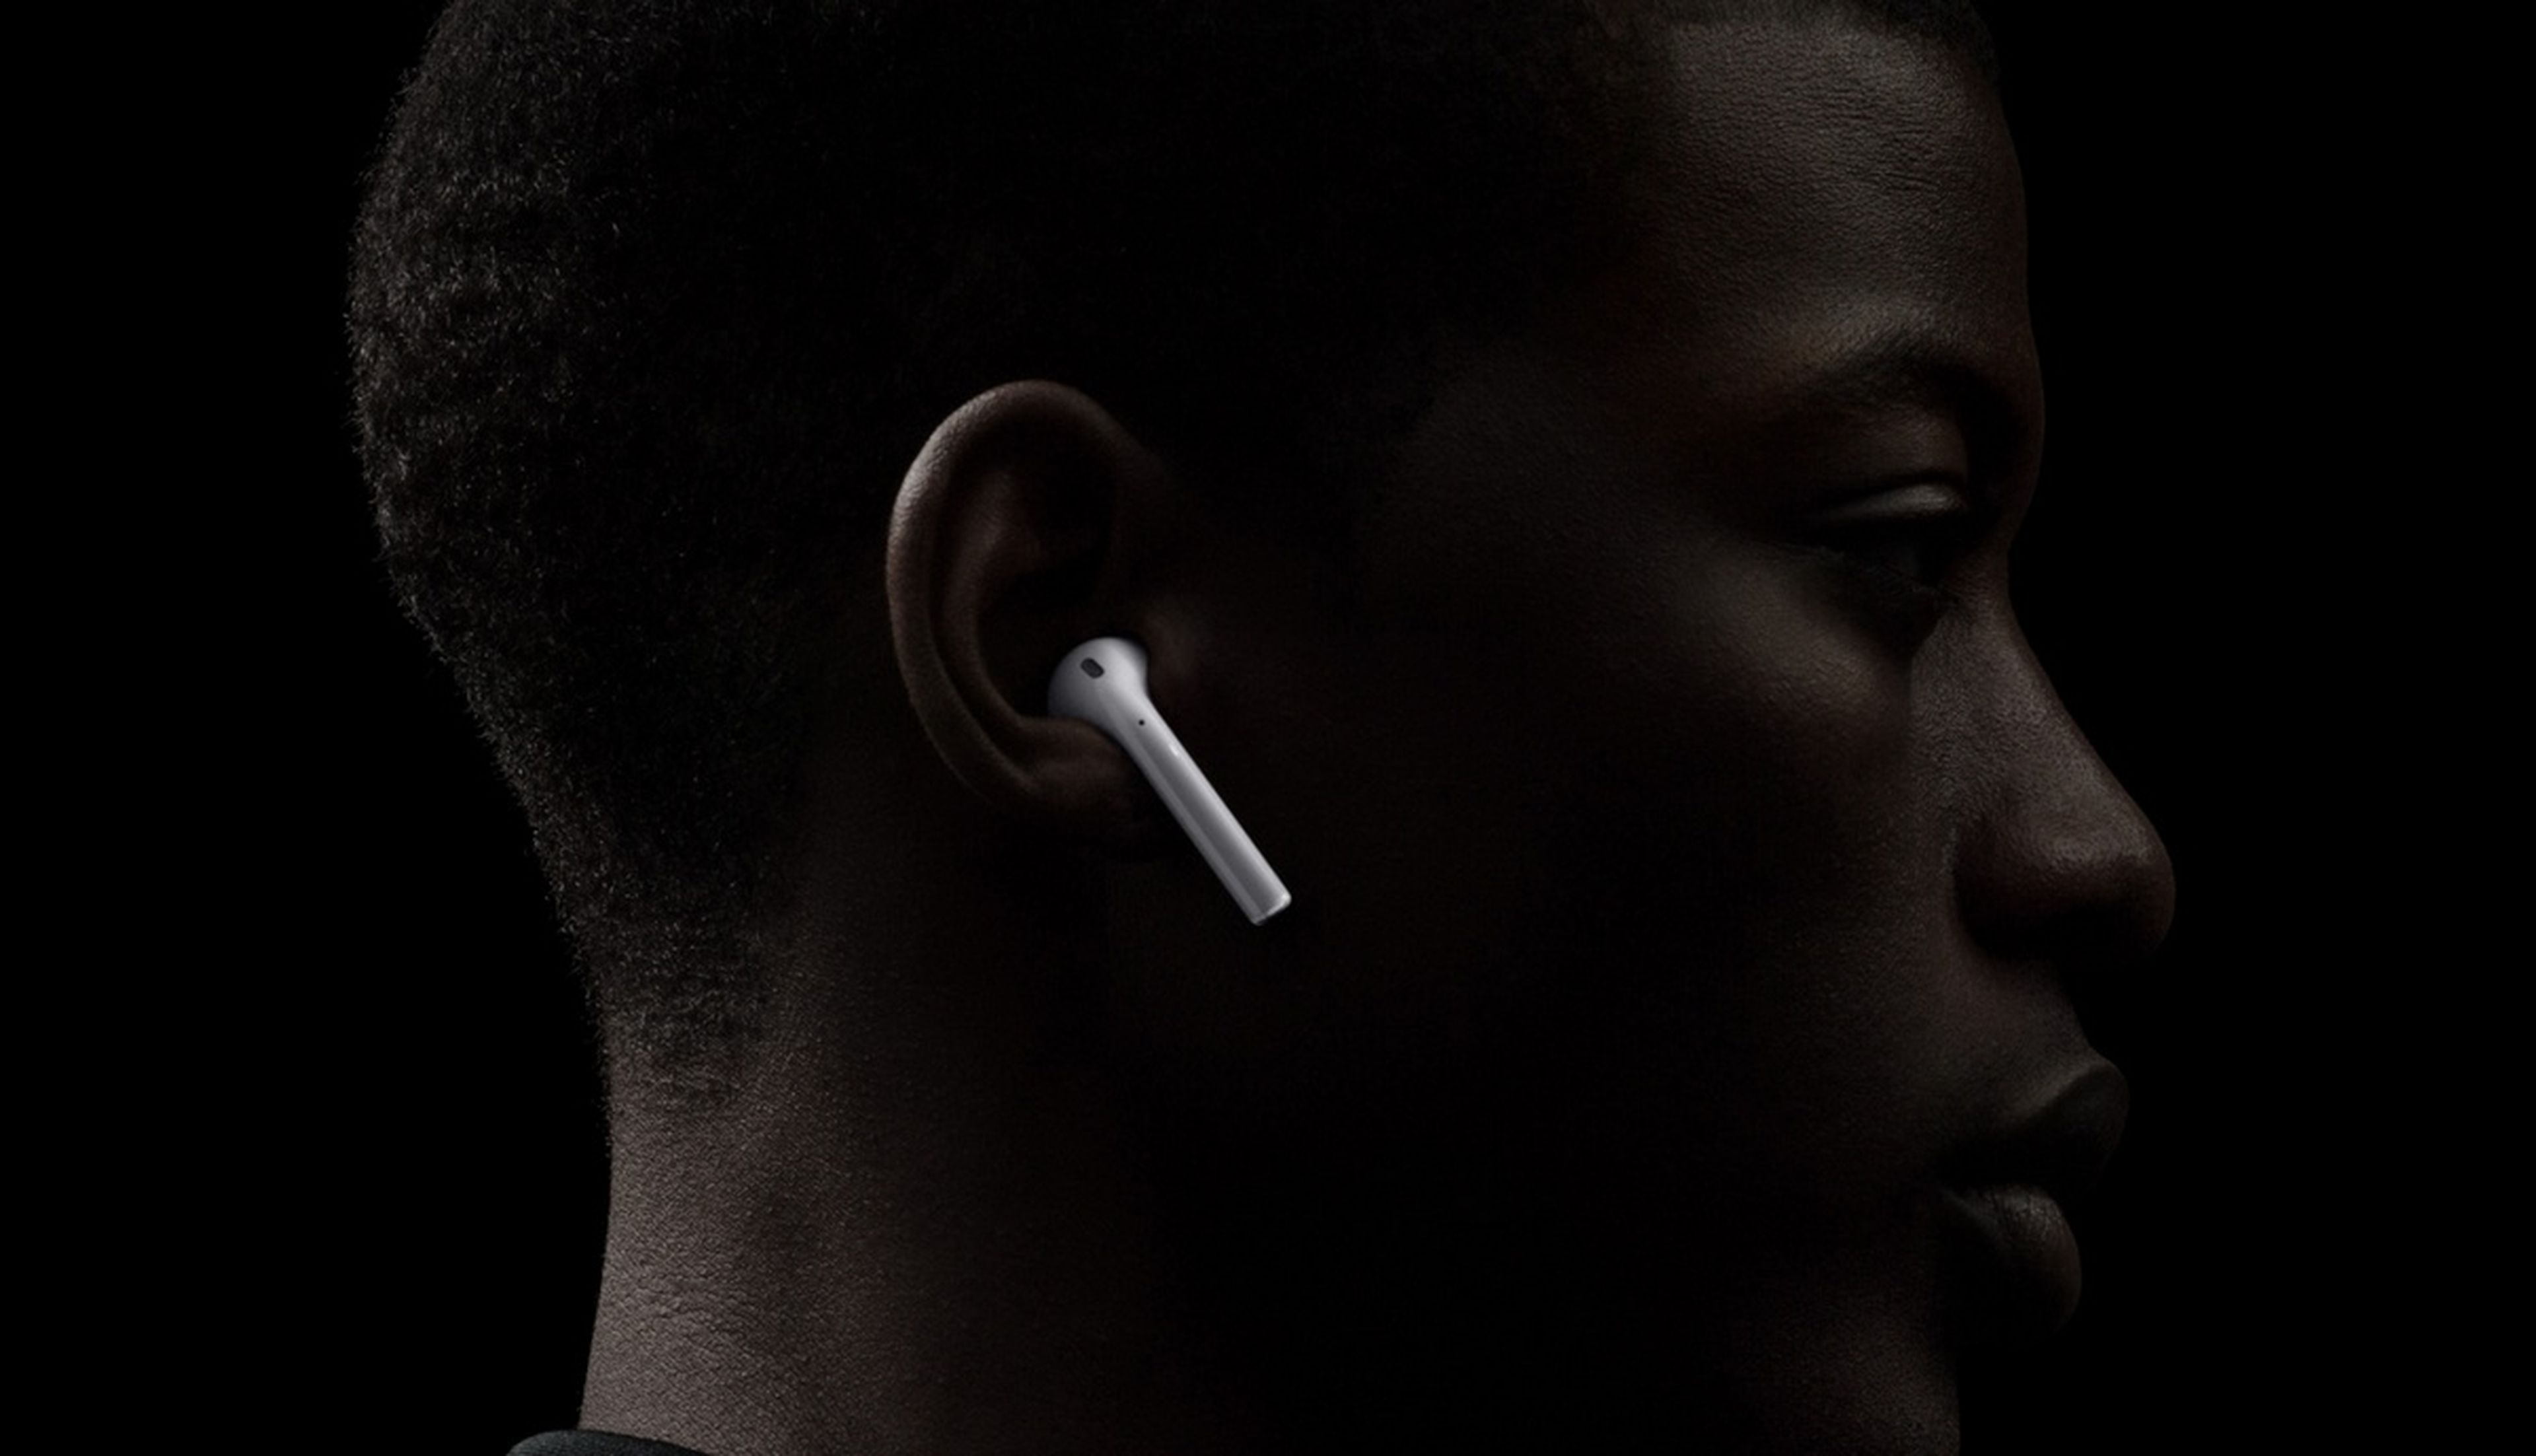 Los auriculares inalámbricos nunca tendrán la calidad de audio del cable, según un estudio